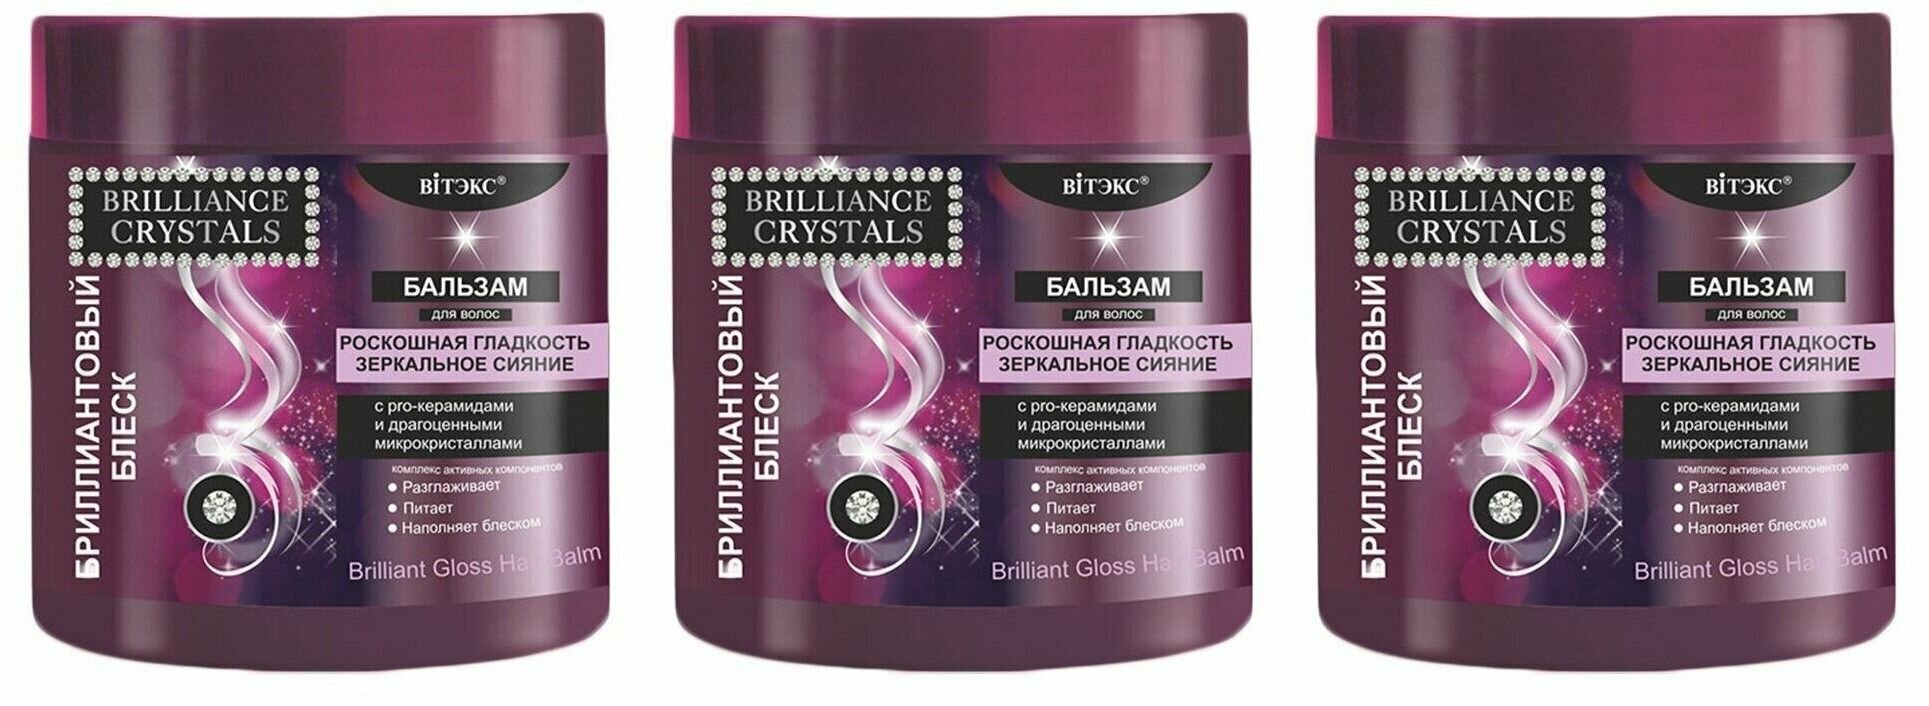 Витэкс Бальзам для волос Brilliance Crystals Бриллиантовый блеск с pro-керамидами и драгоценными микрокристаллами, 400 мл, 3 шт